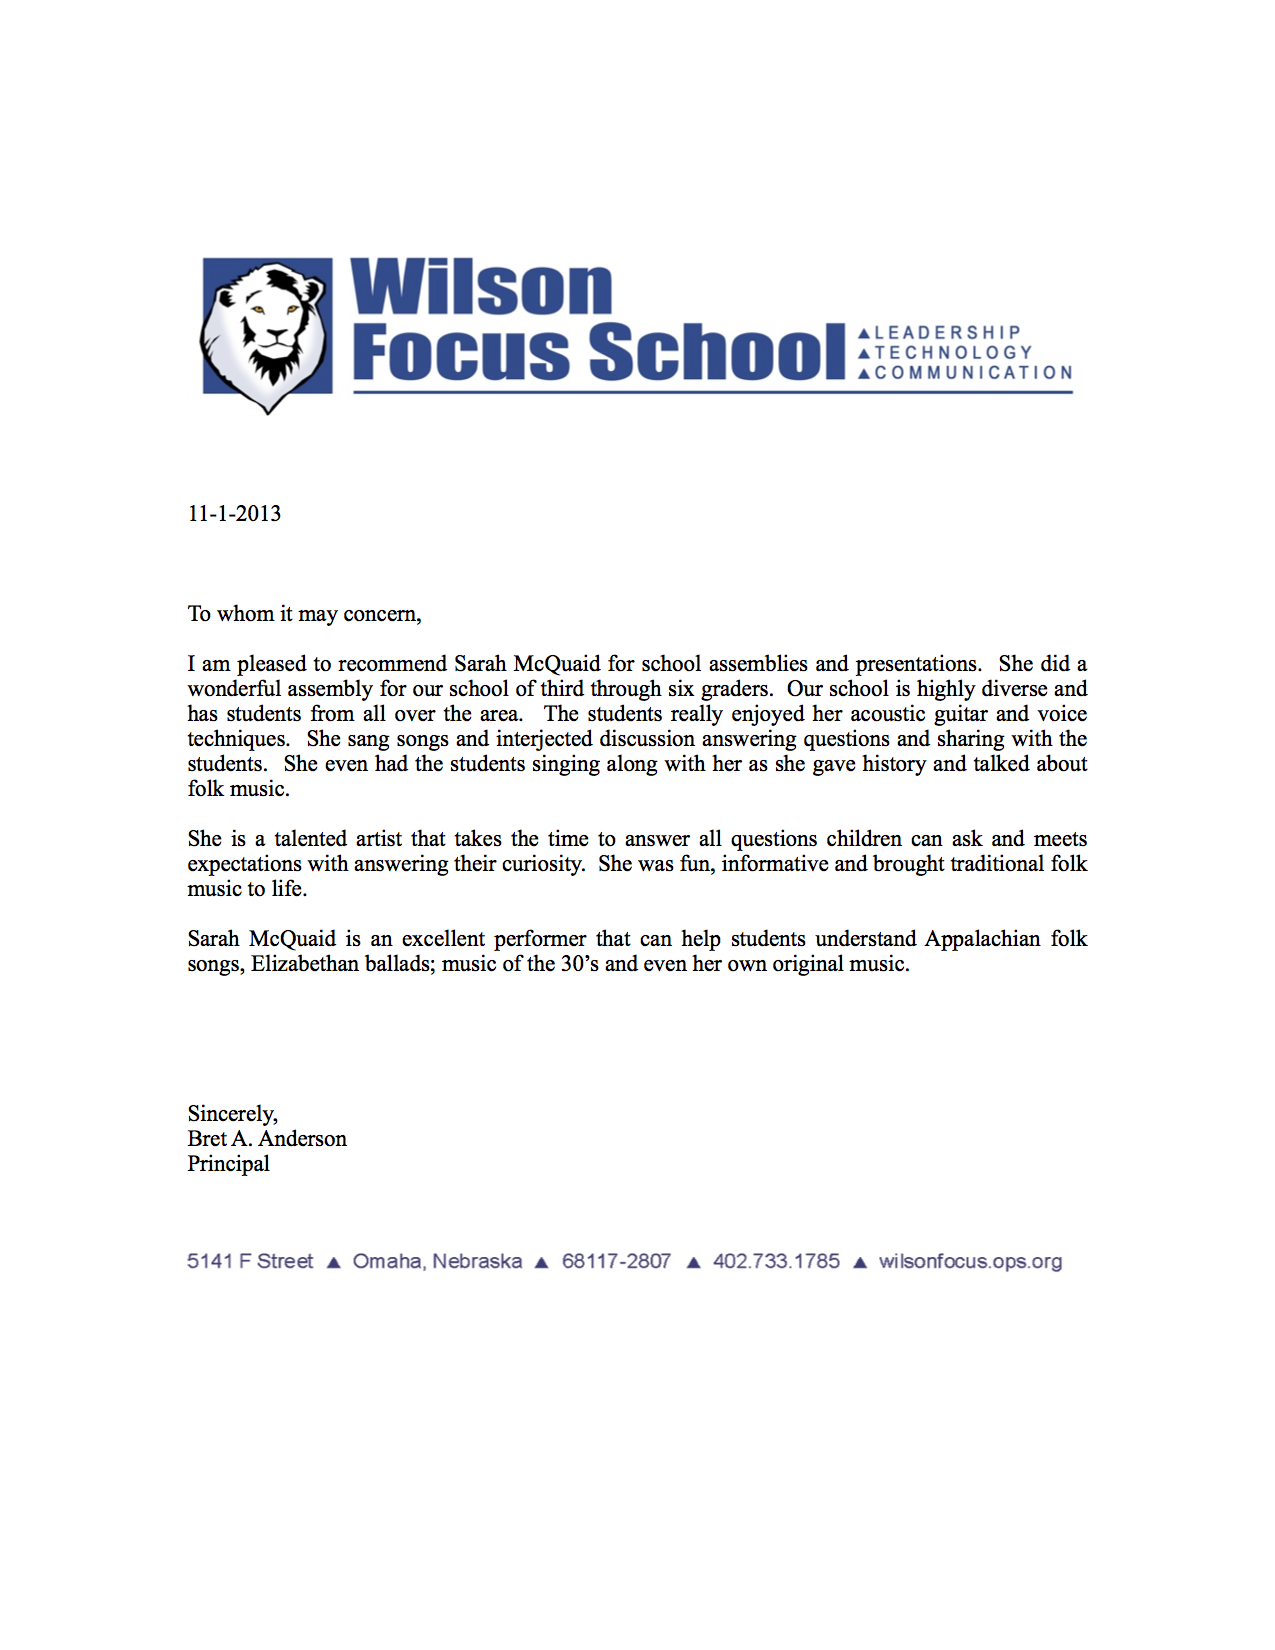 Wilson_Focus_Letter